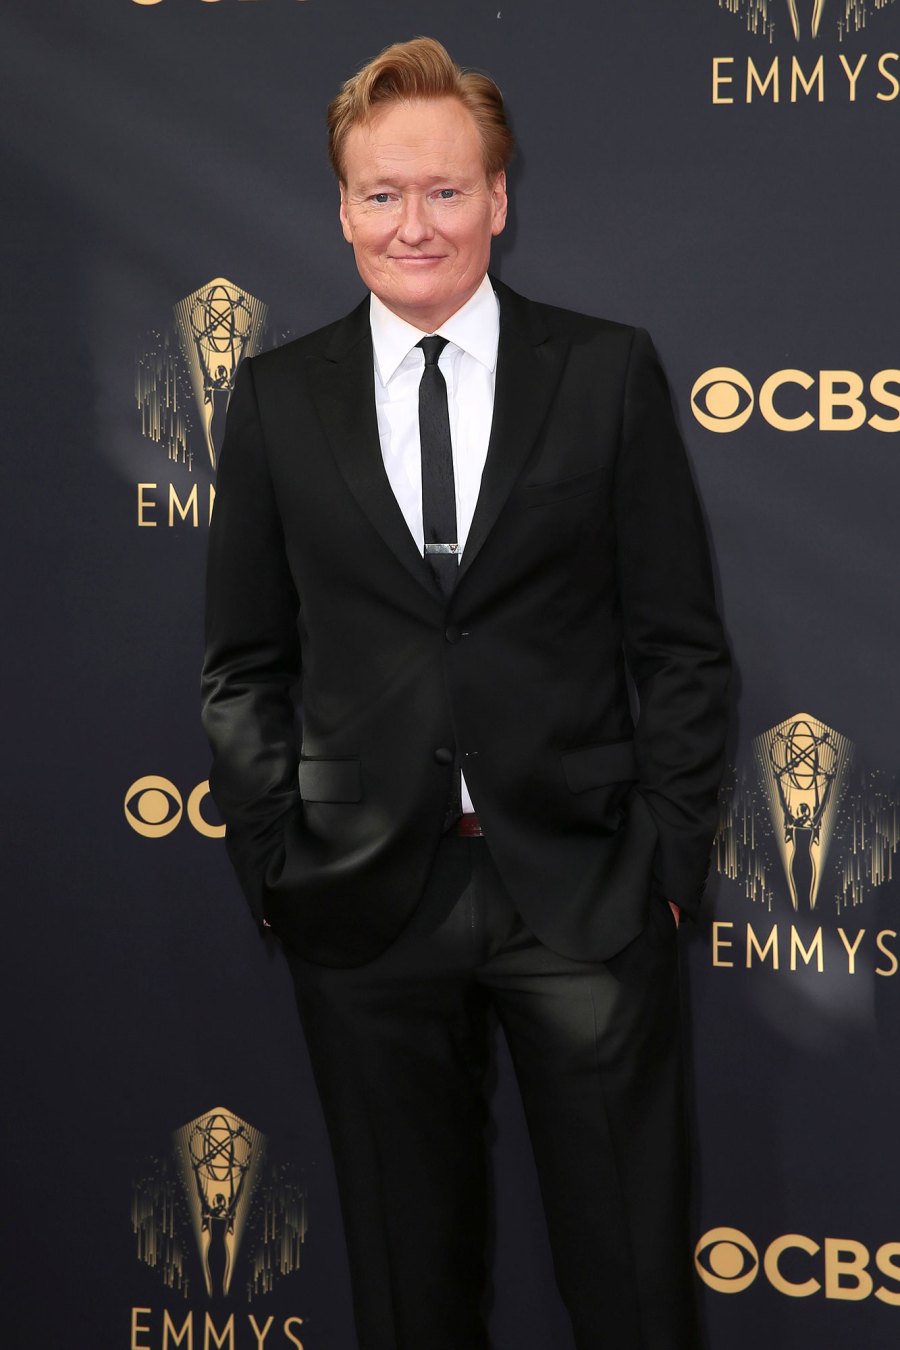 Conan O'Brien Celebs React to Will Smith Slapping Chris Rock Oscars 2022